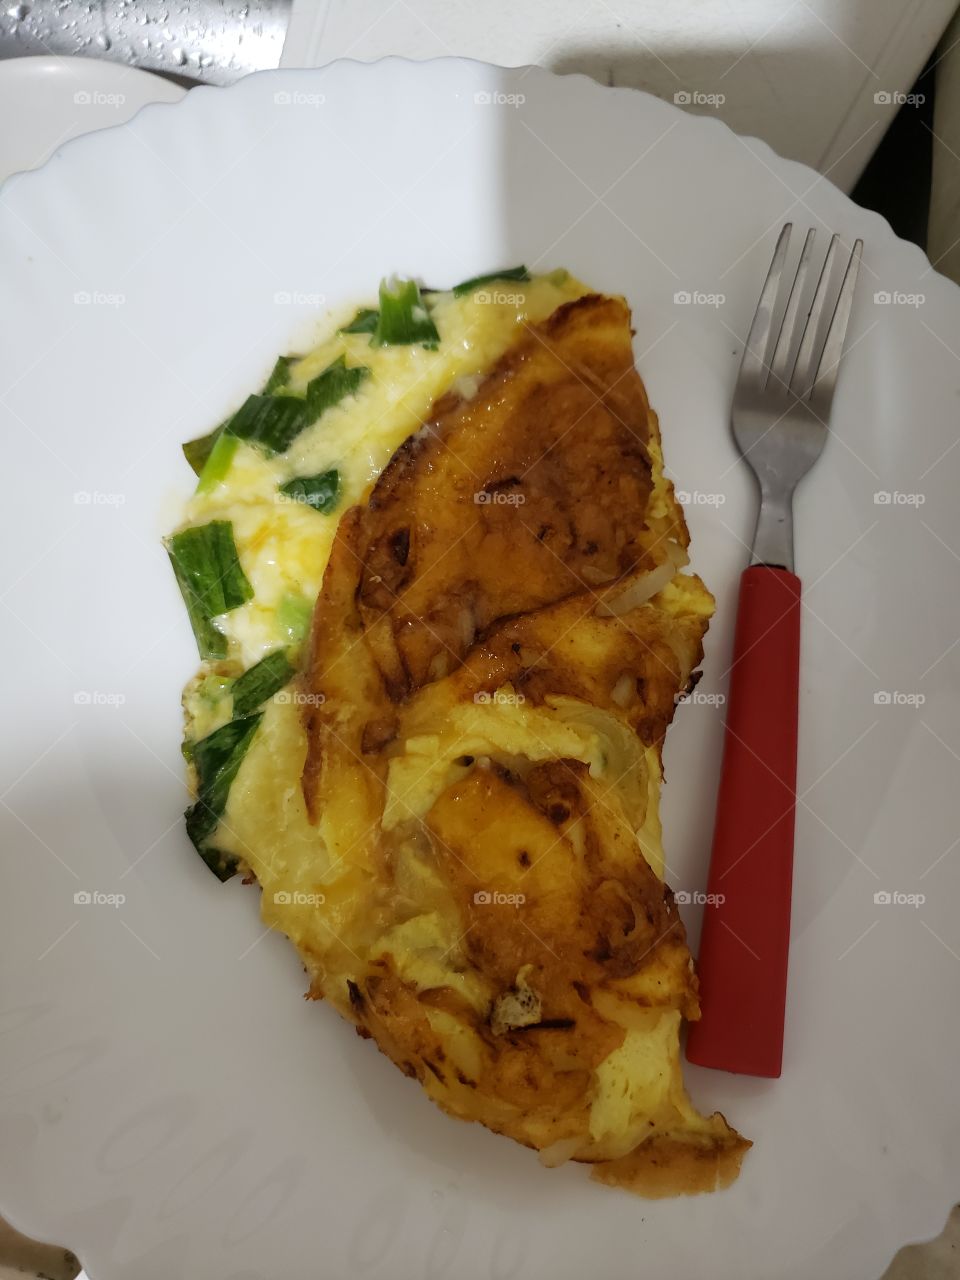 Omelete saudável feito por mim... caprichei no curry, salsa e cebolinha...